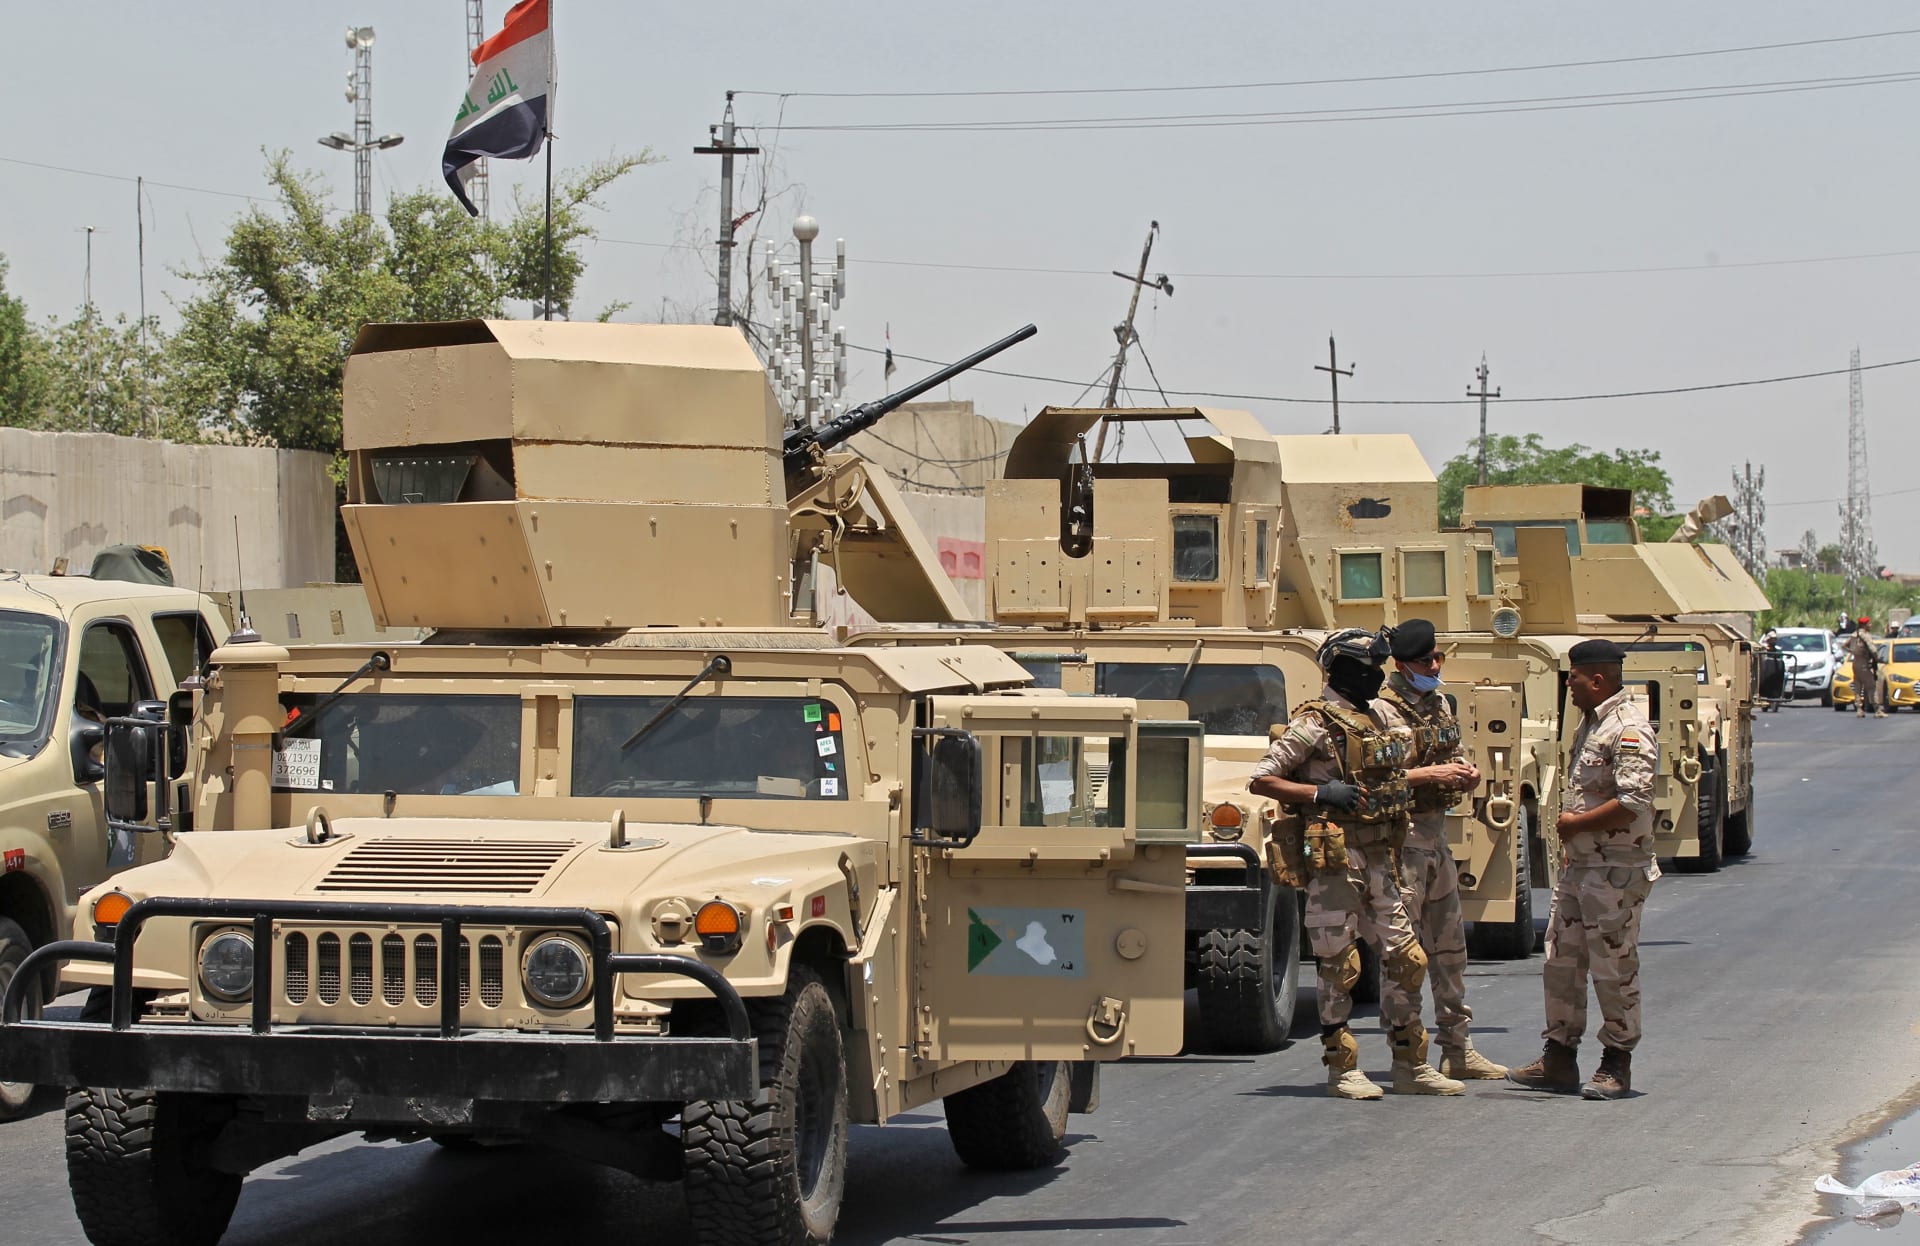 آليات عسكرية تابعة للجيش العراقي في العاصمة بغداد